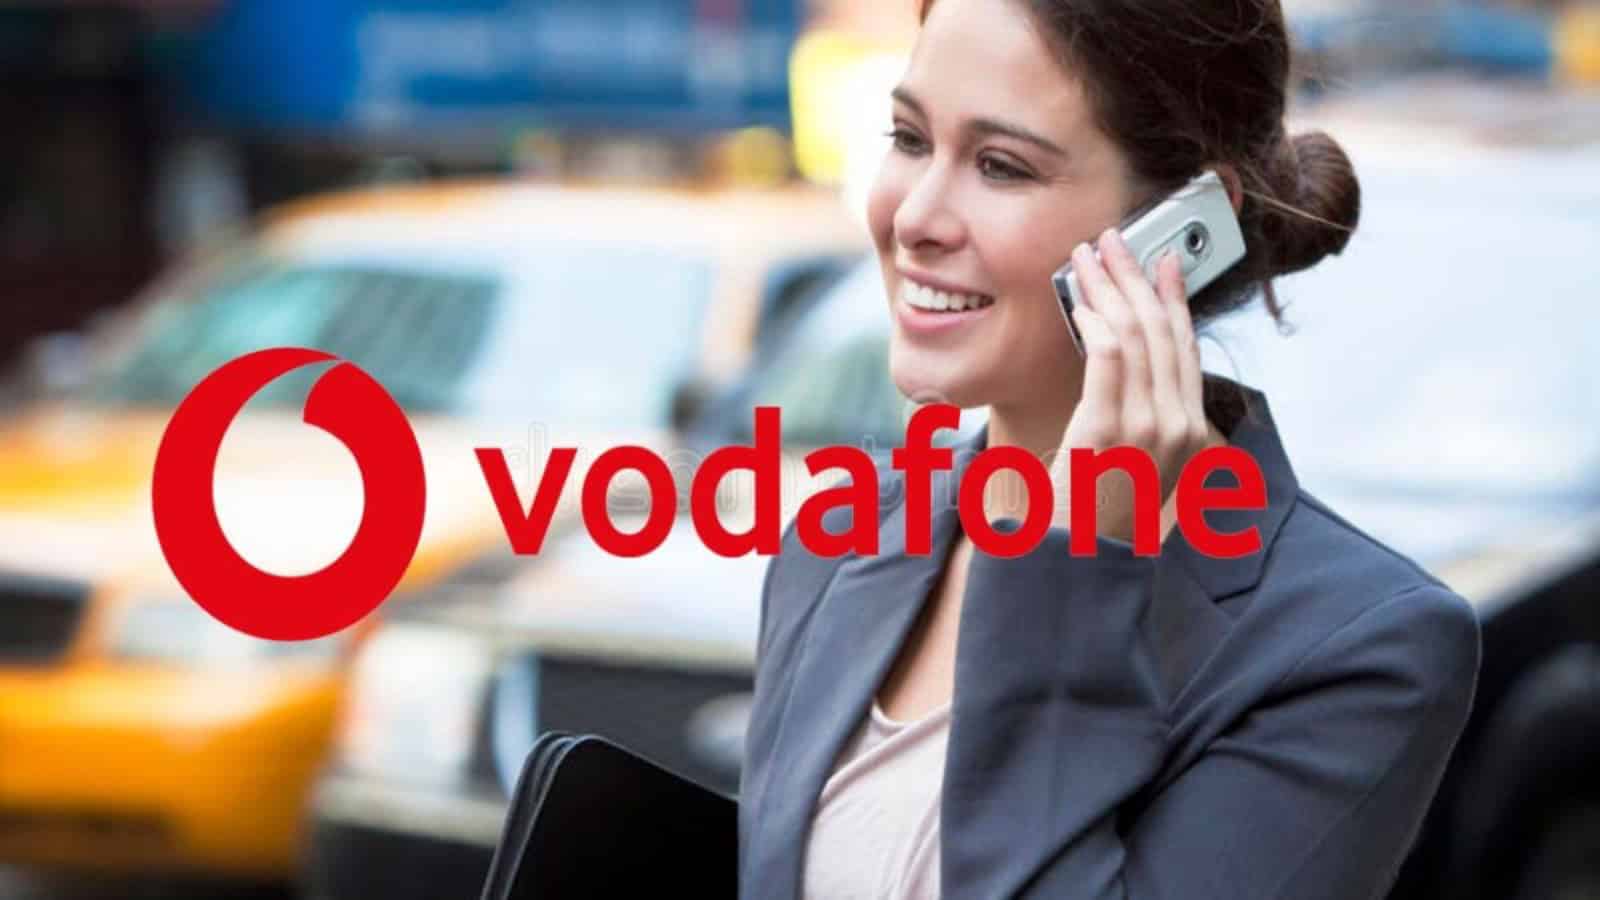 Vodafone, le promo bomba sono tornate: con 7 euro ci sono le Silver